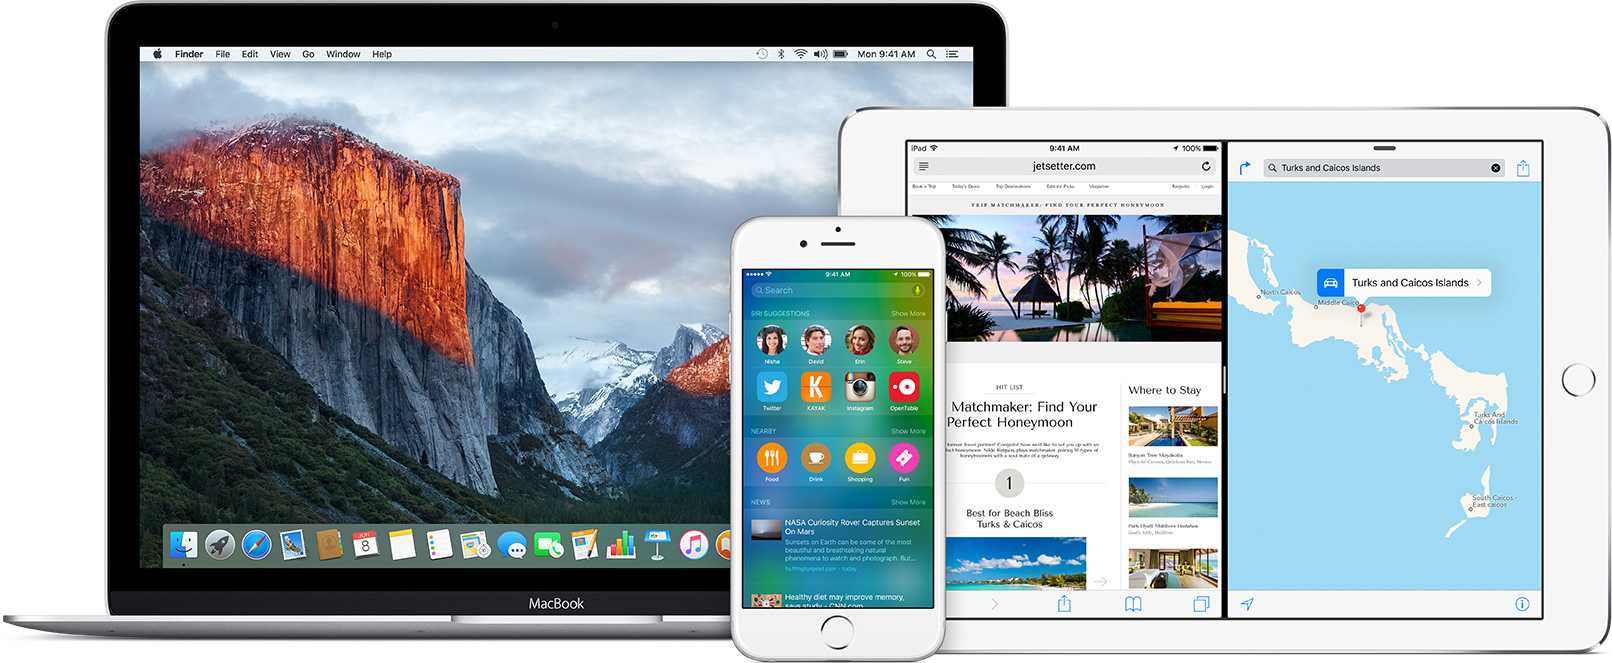 Versões beta do OS X El Capitan 10.11 e do iOS 9